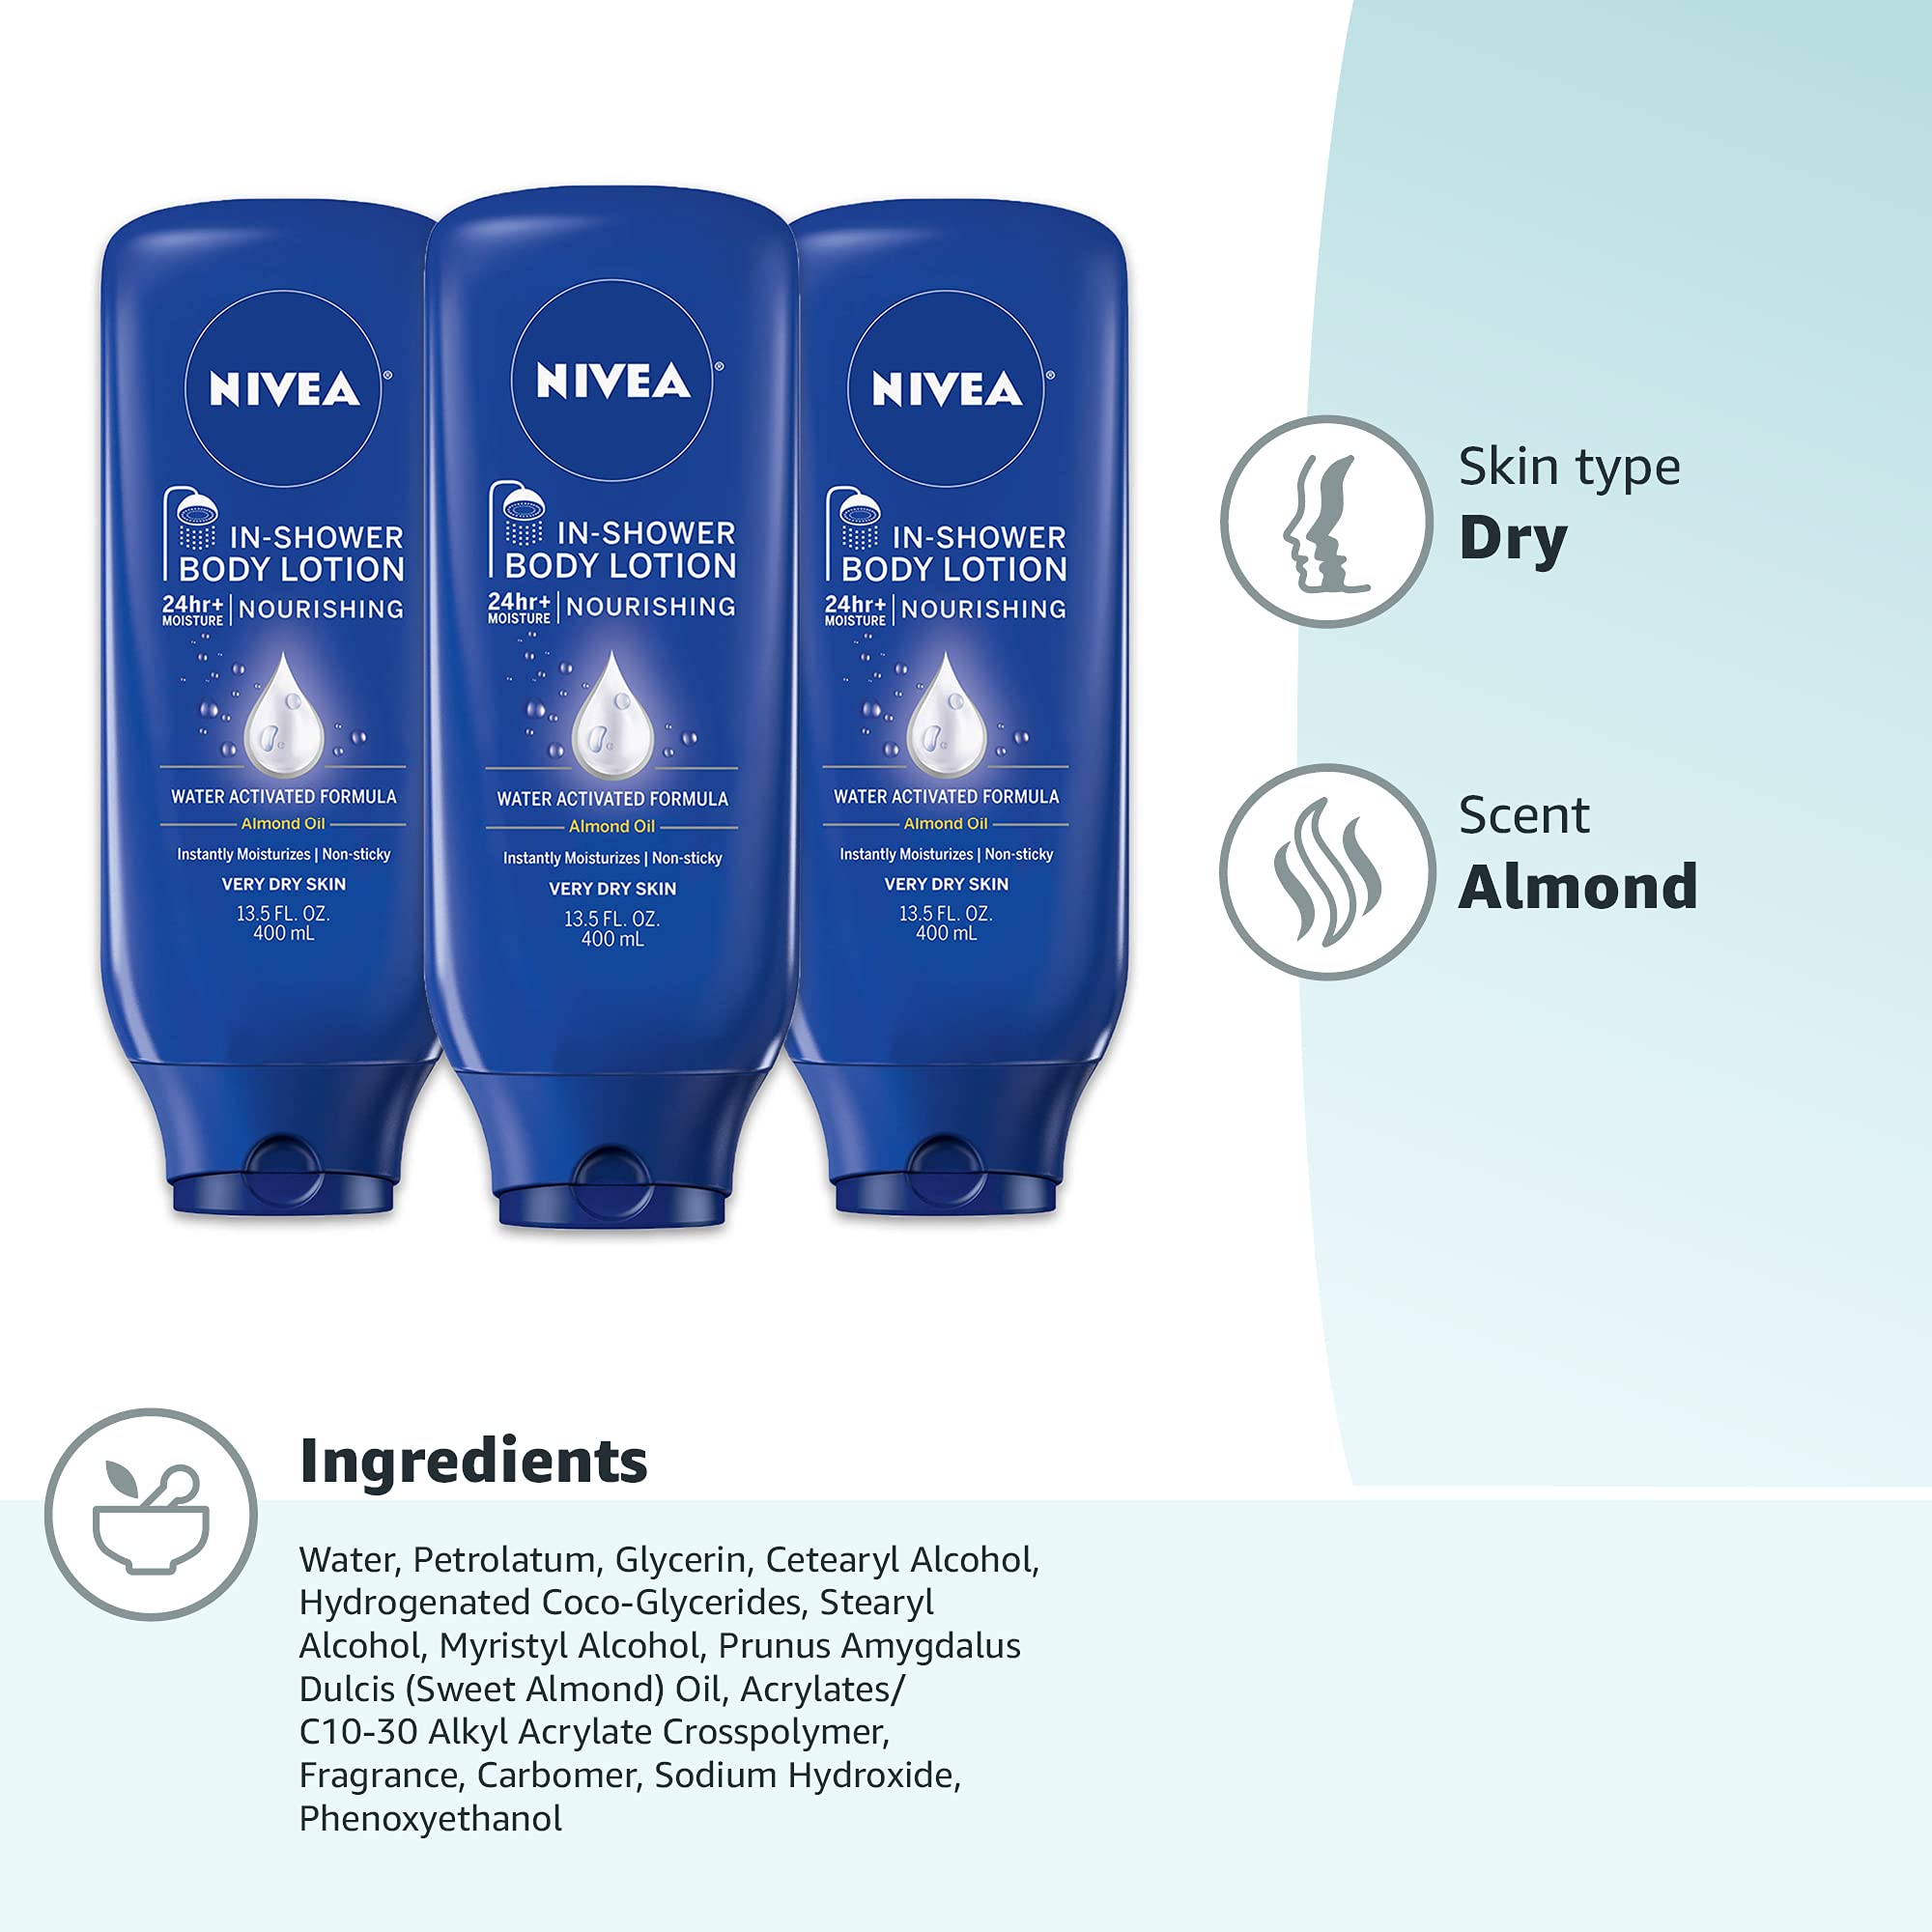 NIVEA Nourishing In Shower Lotion, Body Lotion for Dry Skin, 13.5 Fl Oz Bottle(Pack of 3)